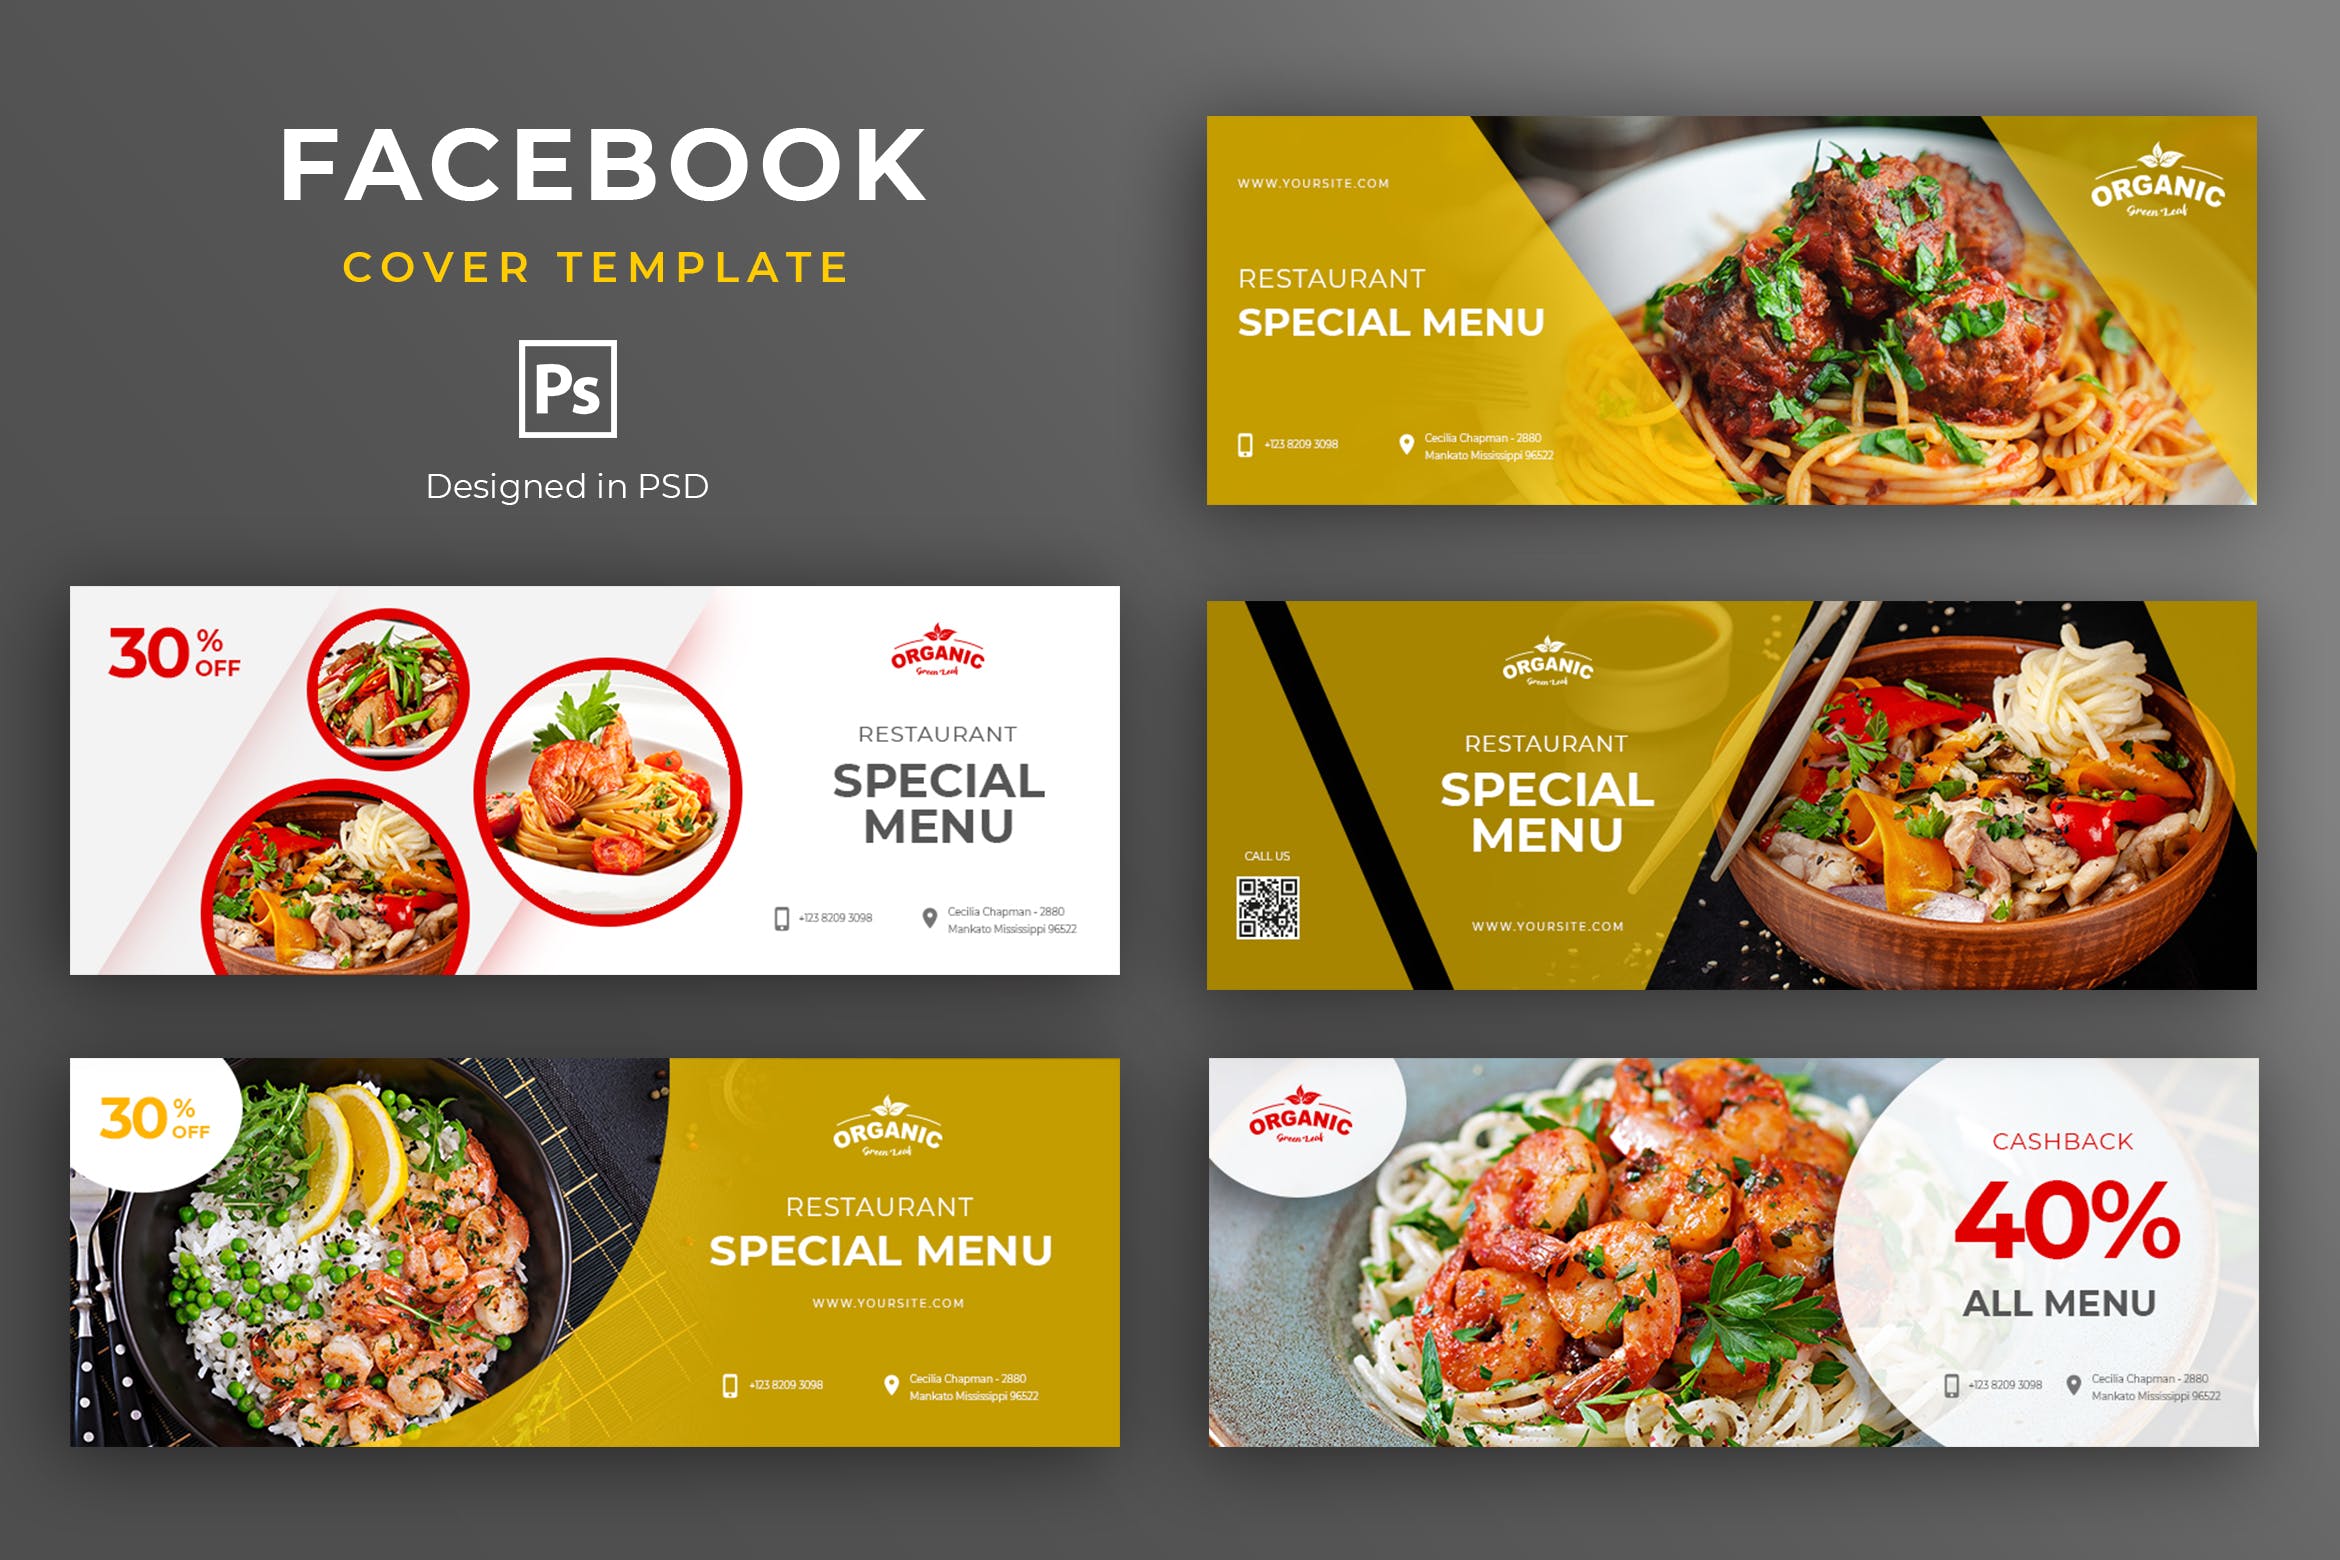 餐厅美食品牌推广Facebook主页封面设计模板素材库精选 Food and Resto Facebook Cover Template插图